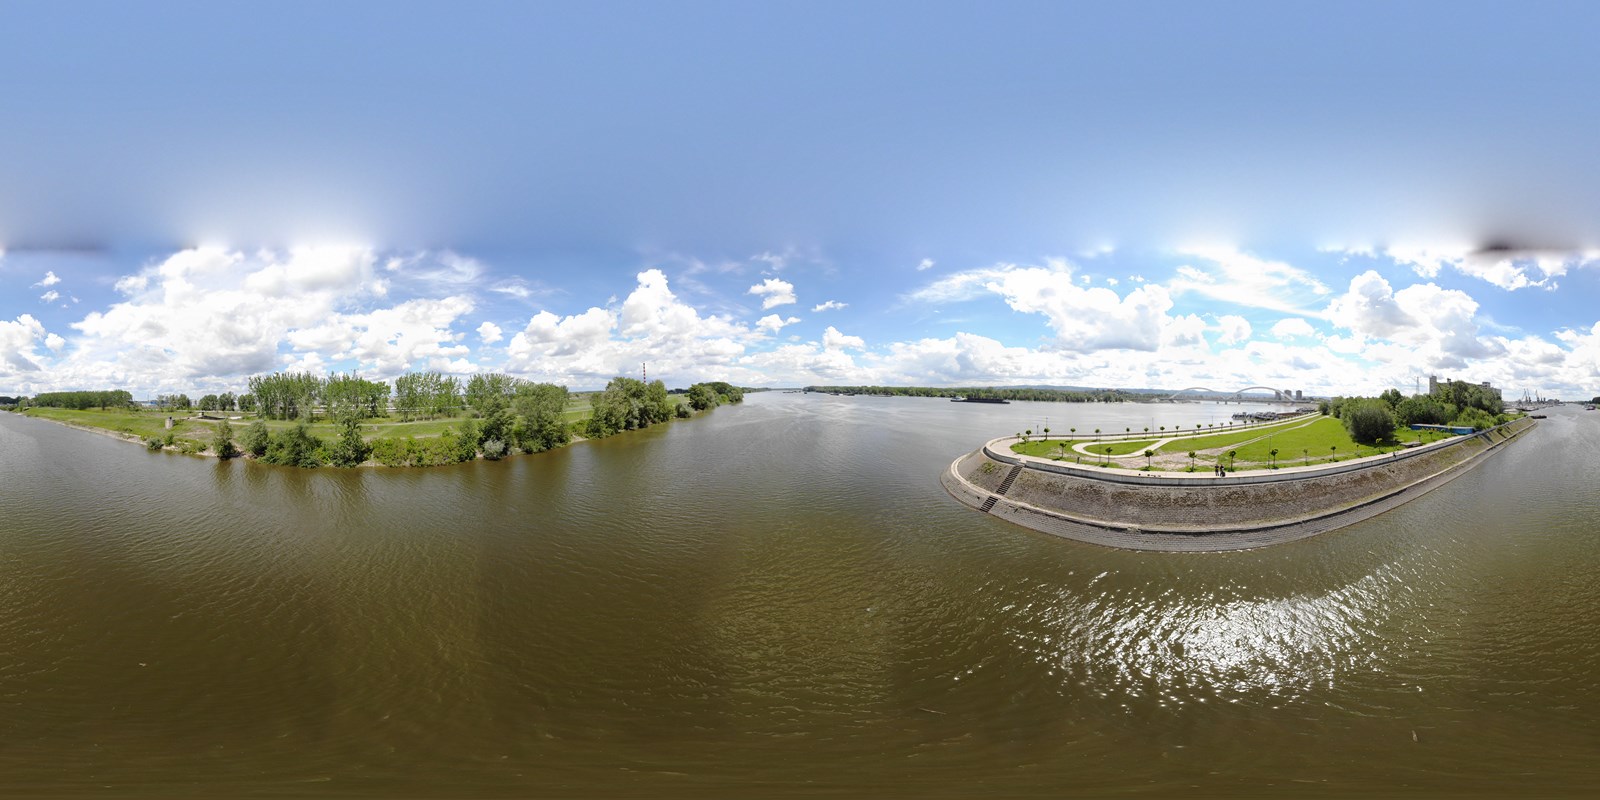 Snimanje dronom photo sky art Projekat ‘Senka na lakat’, most preko Dunava Novi Sad